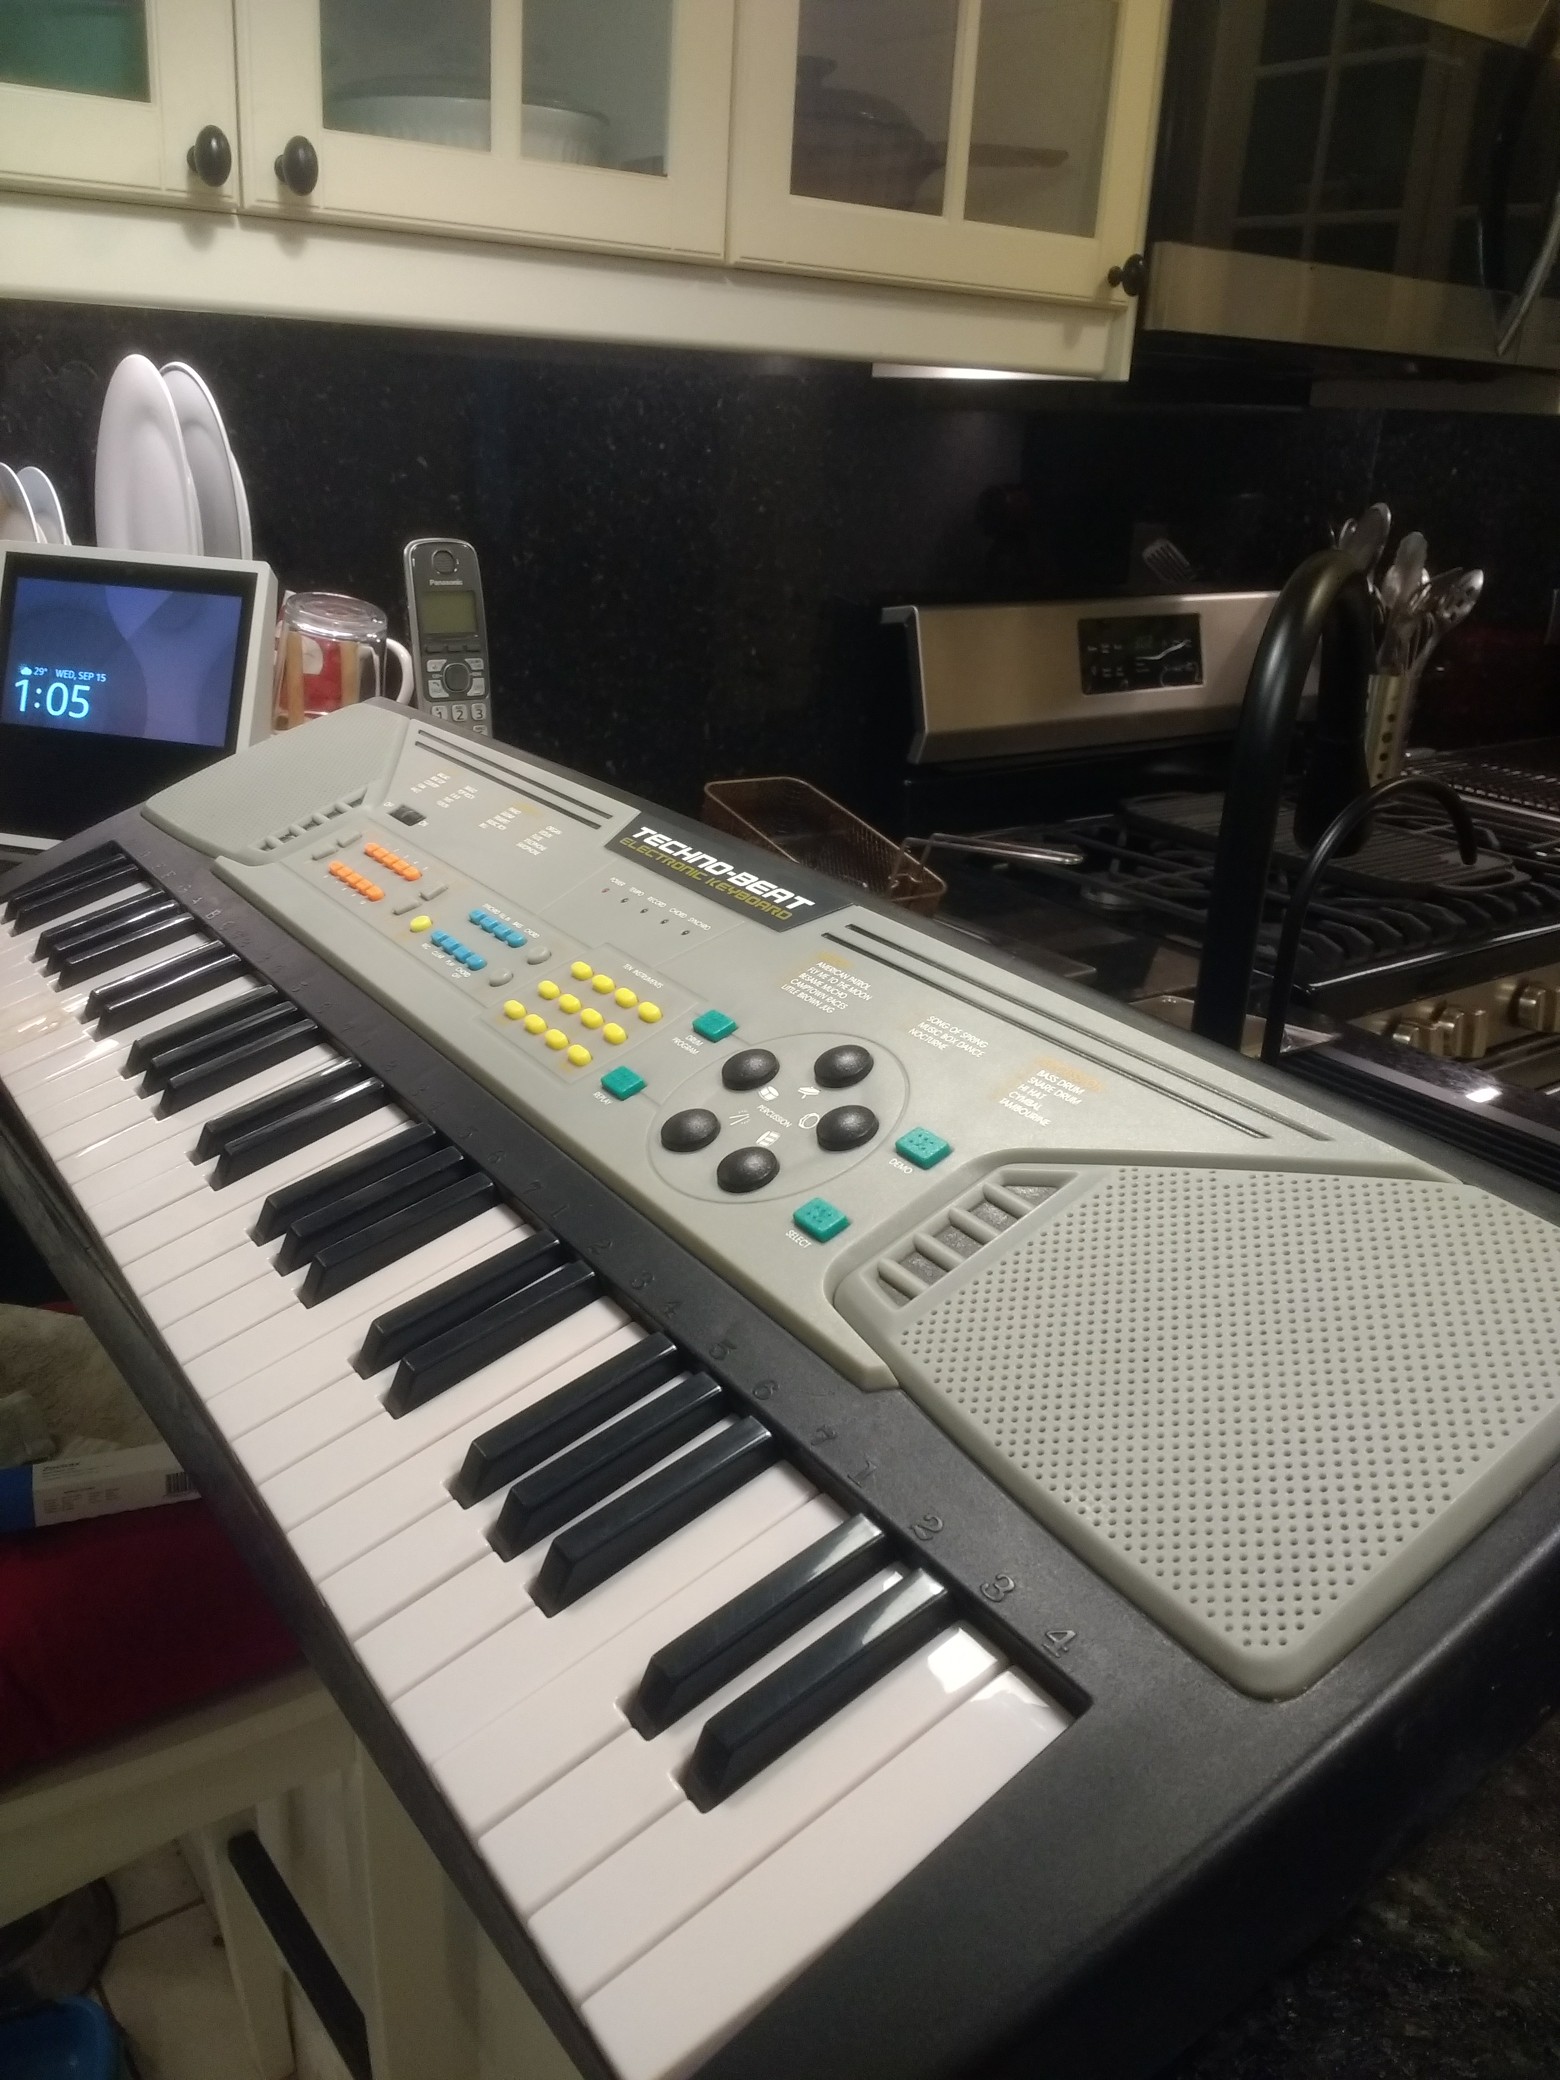 instrumentos musicales - piano 🎹 electrico , sintetizador , para afcionados , aprendiz